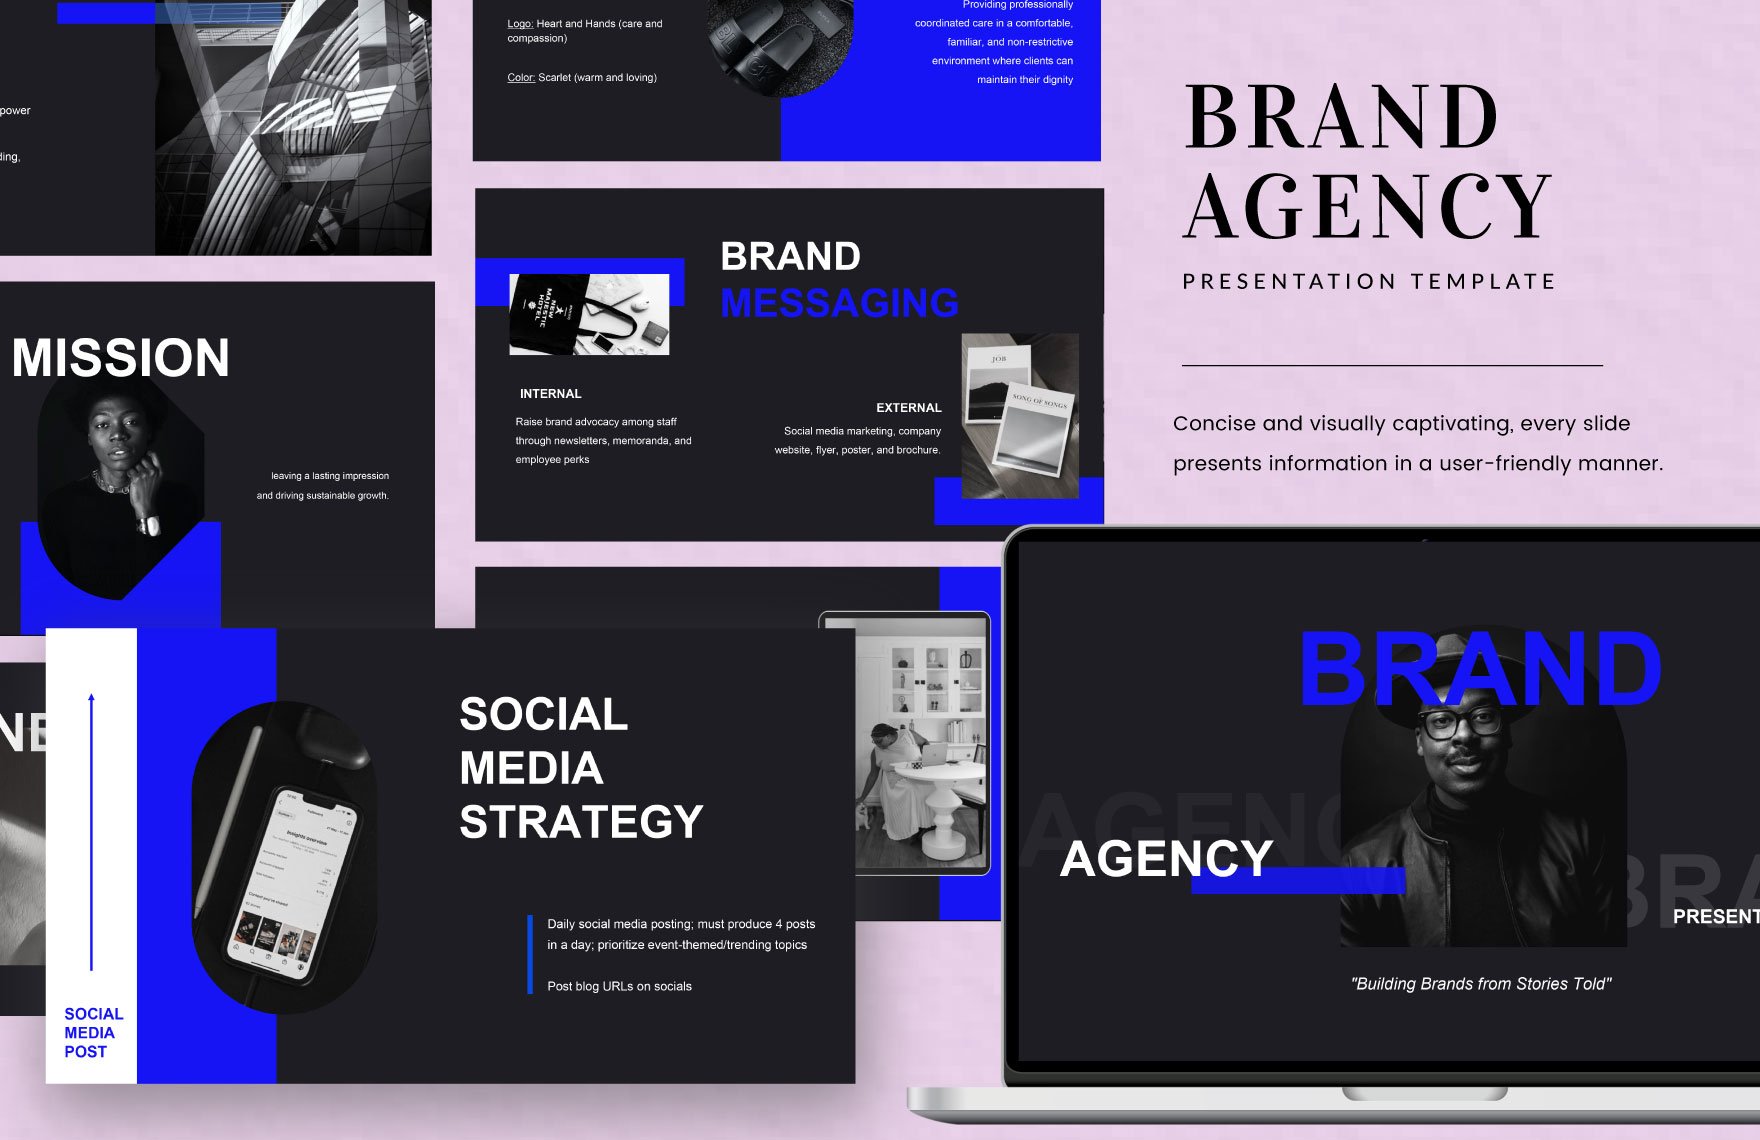 Brand Agency Presentation